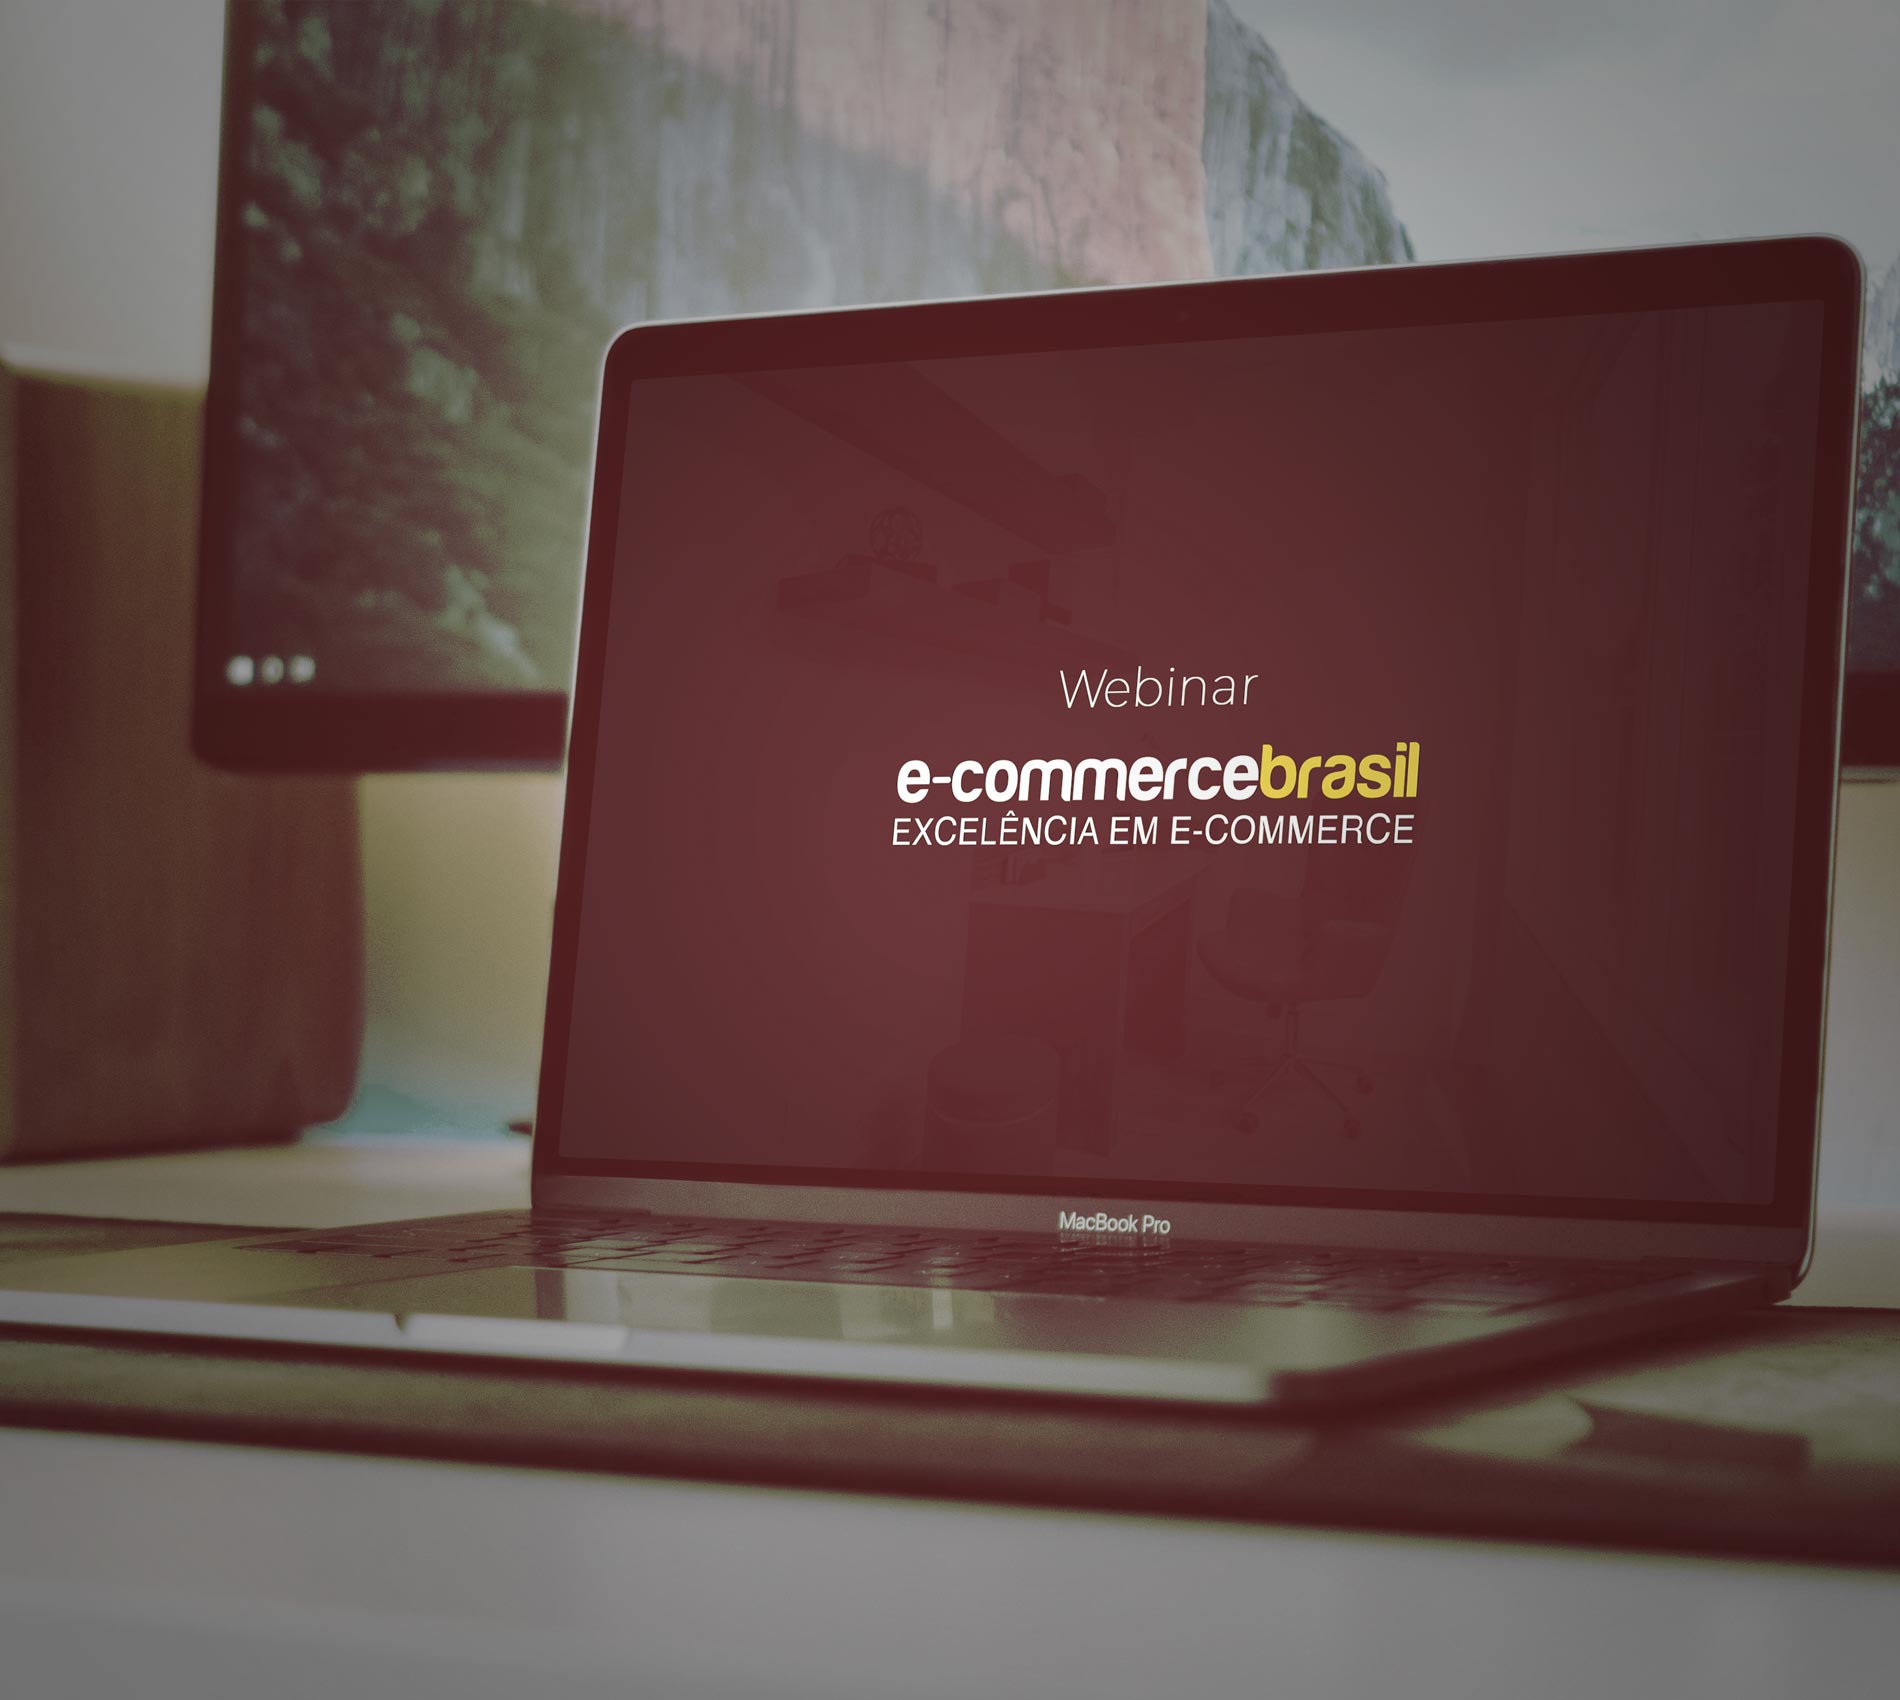 Webinar E-commerce Brasil 2020 | 1st Edition